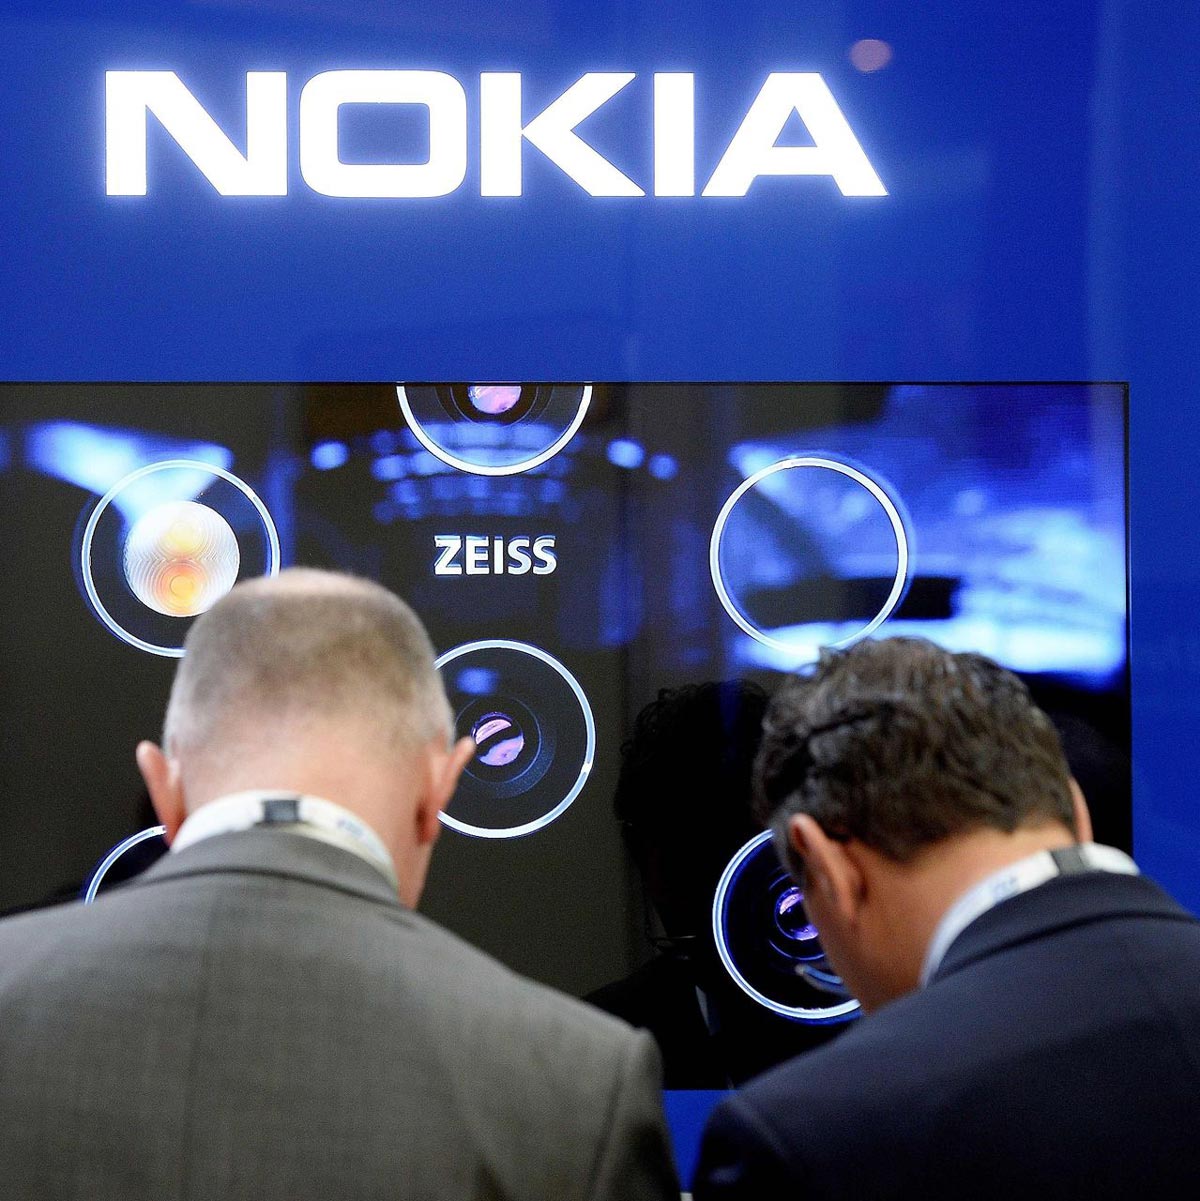 Nokia vay nóng 560
triệu USD để ''bơm'' cho mảng kinh doanh
mạng 5G đang chững lại